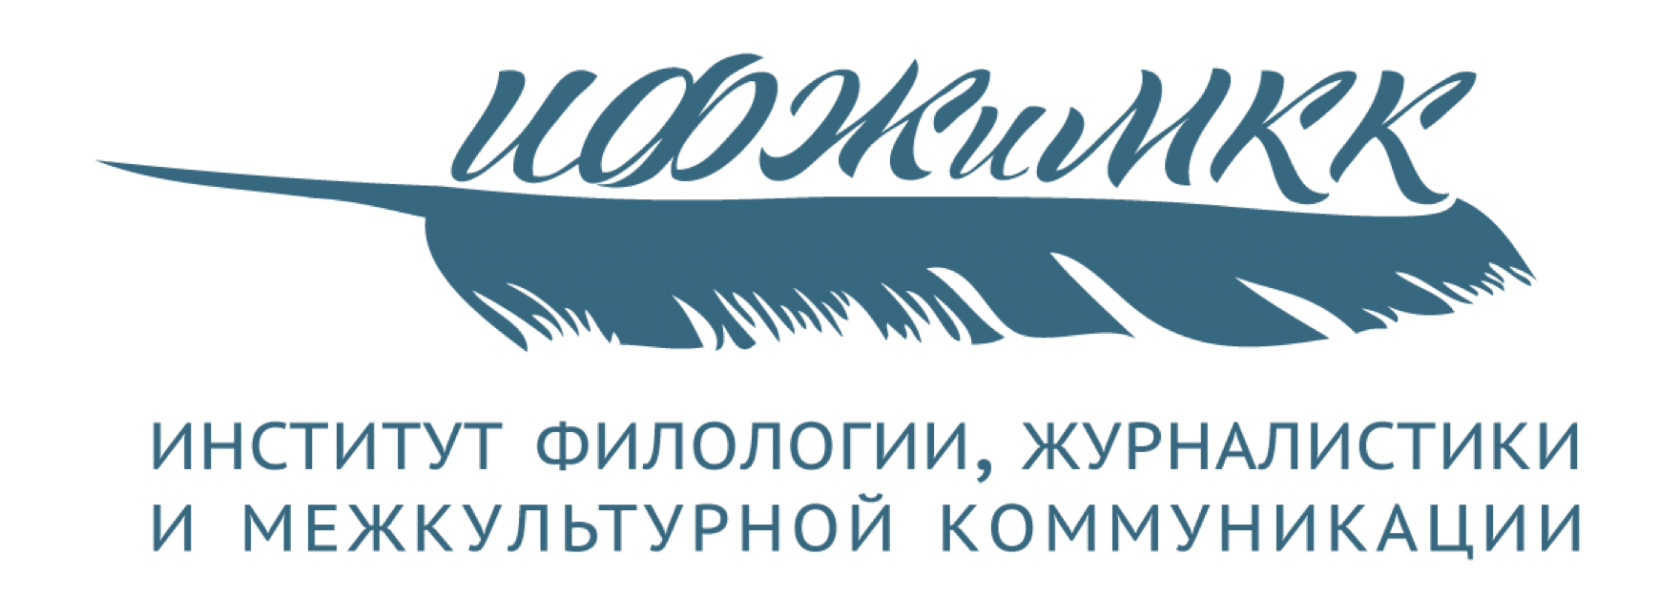 Логотип (Институт филологии, журналистики и межкультурной коммуникации)